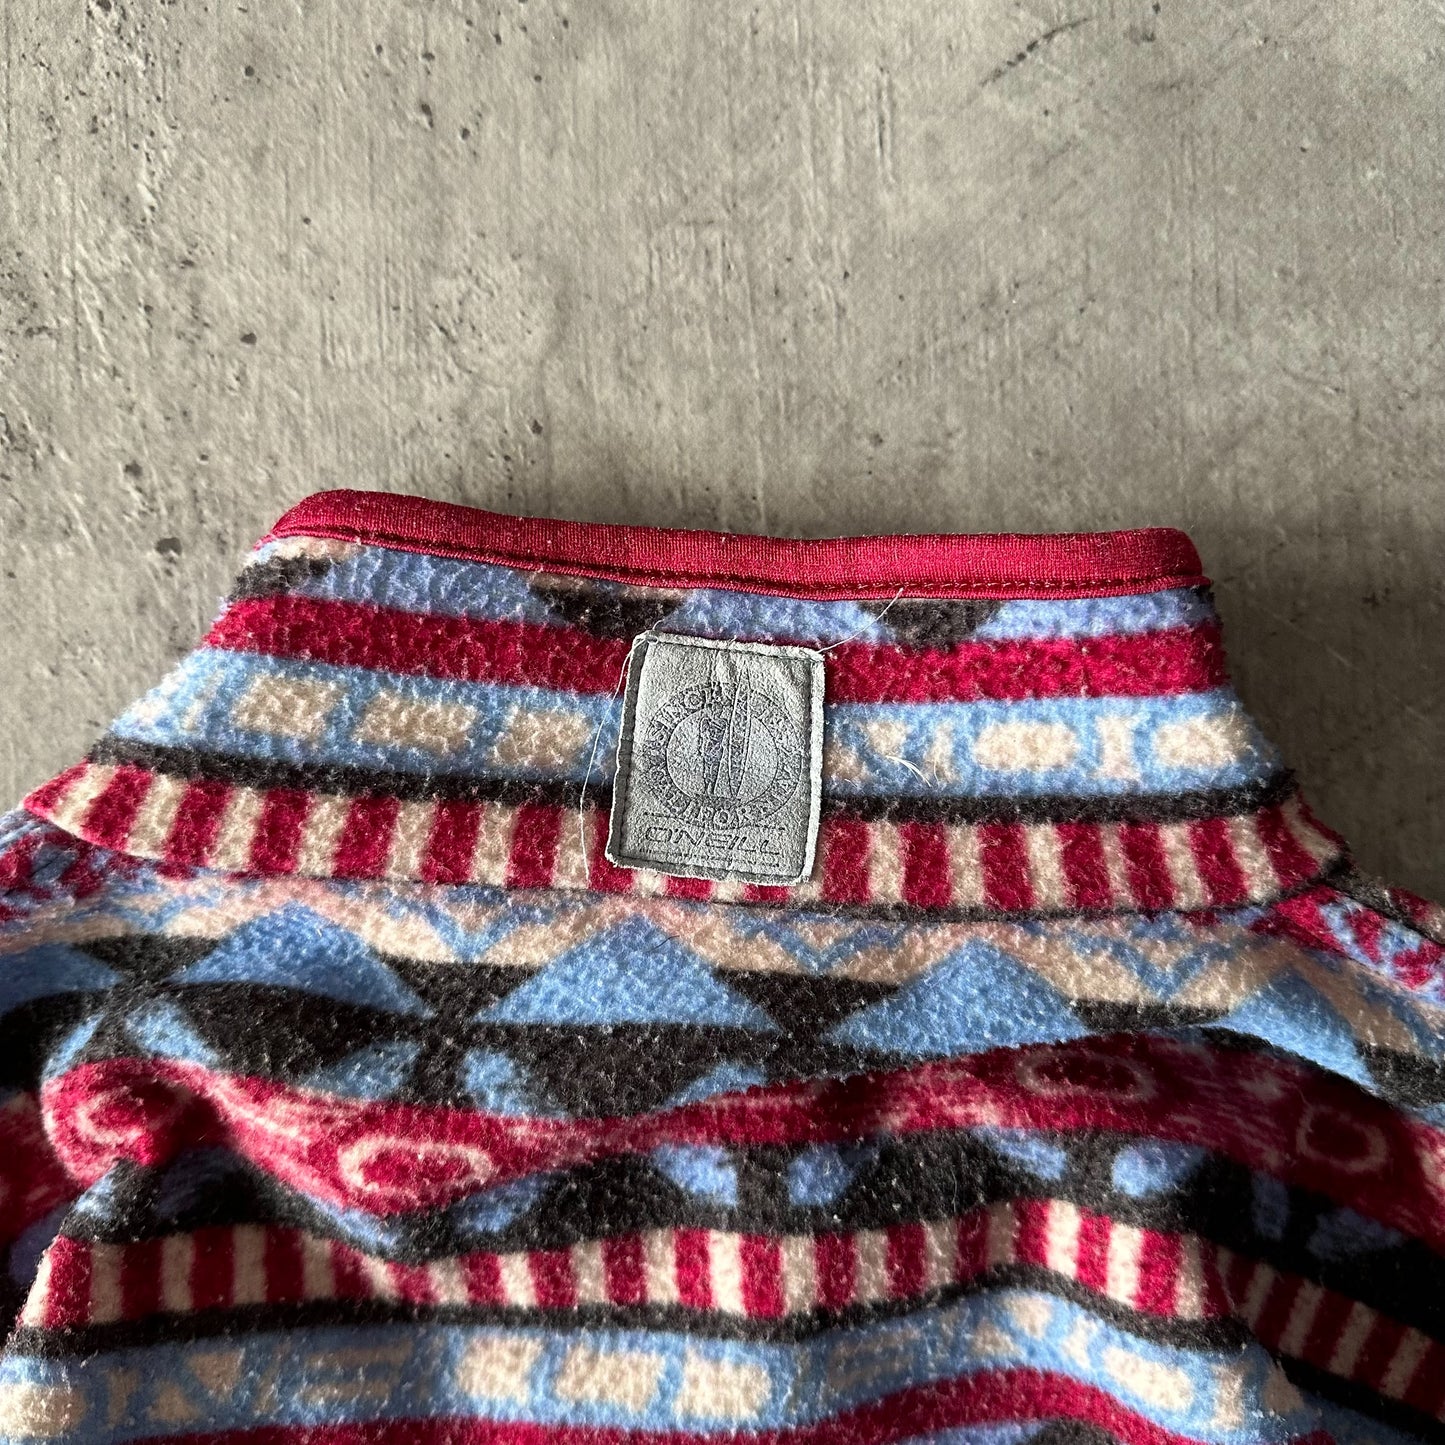 Vintage O'Neill Fleece Sweater